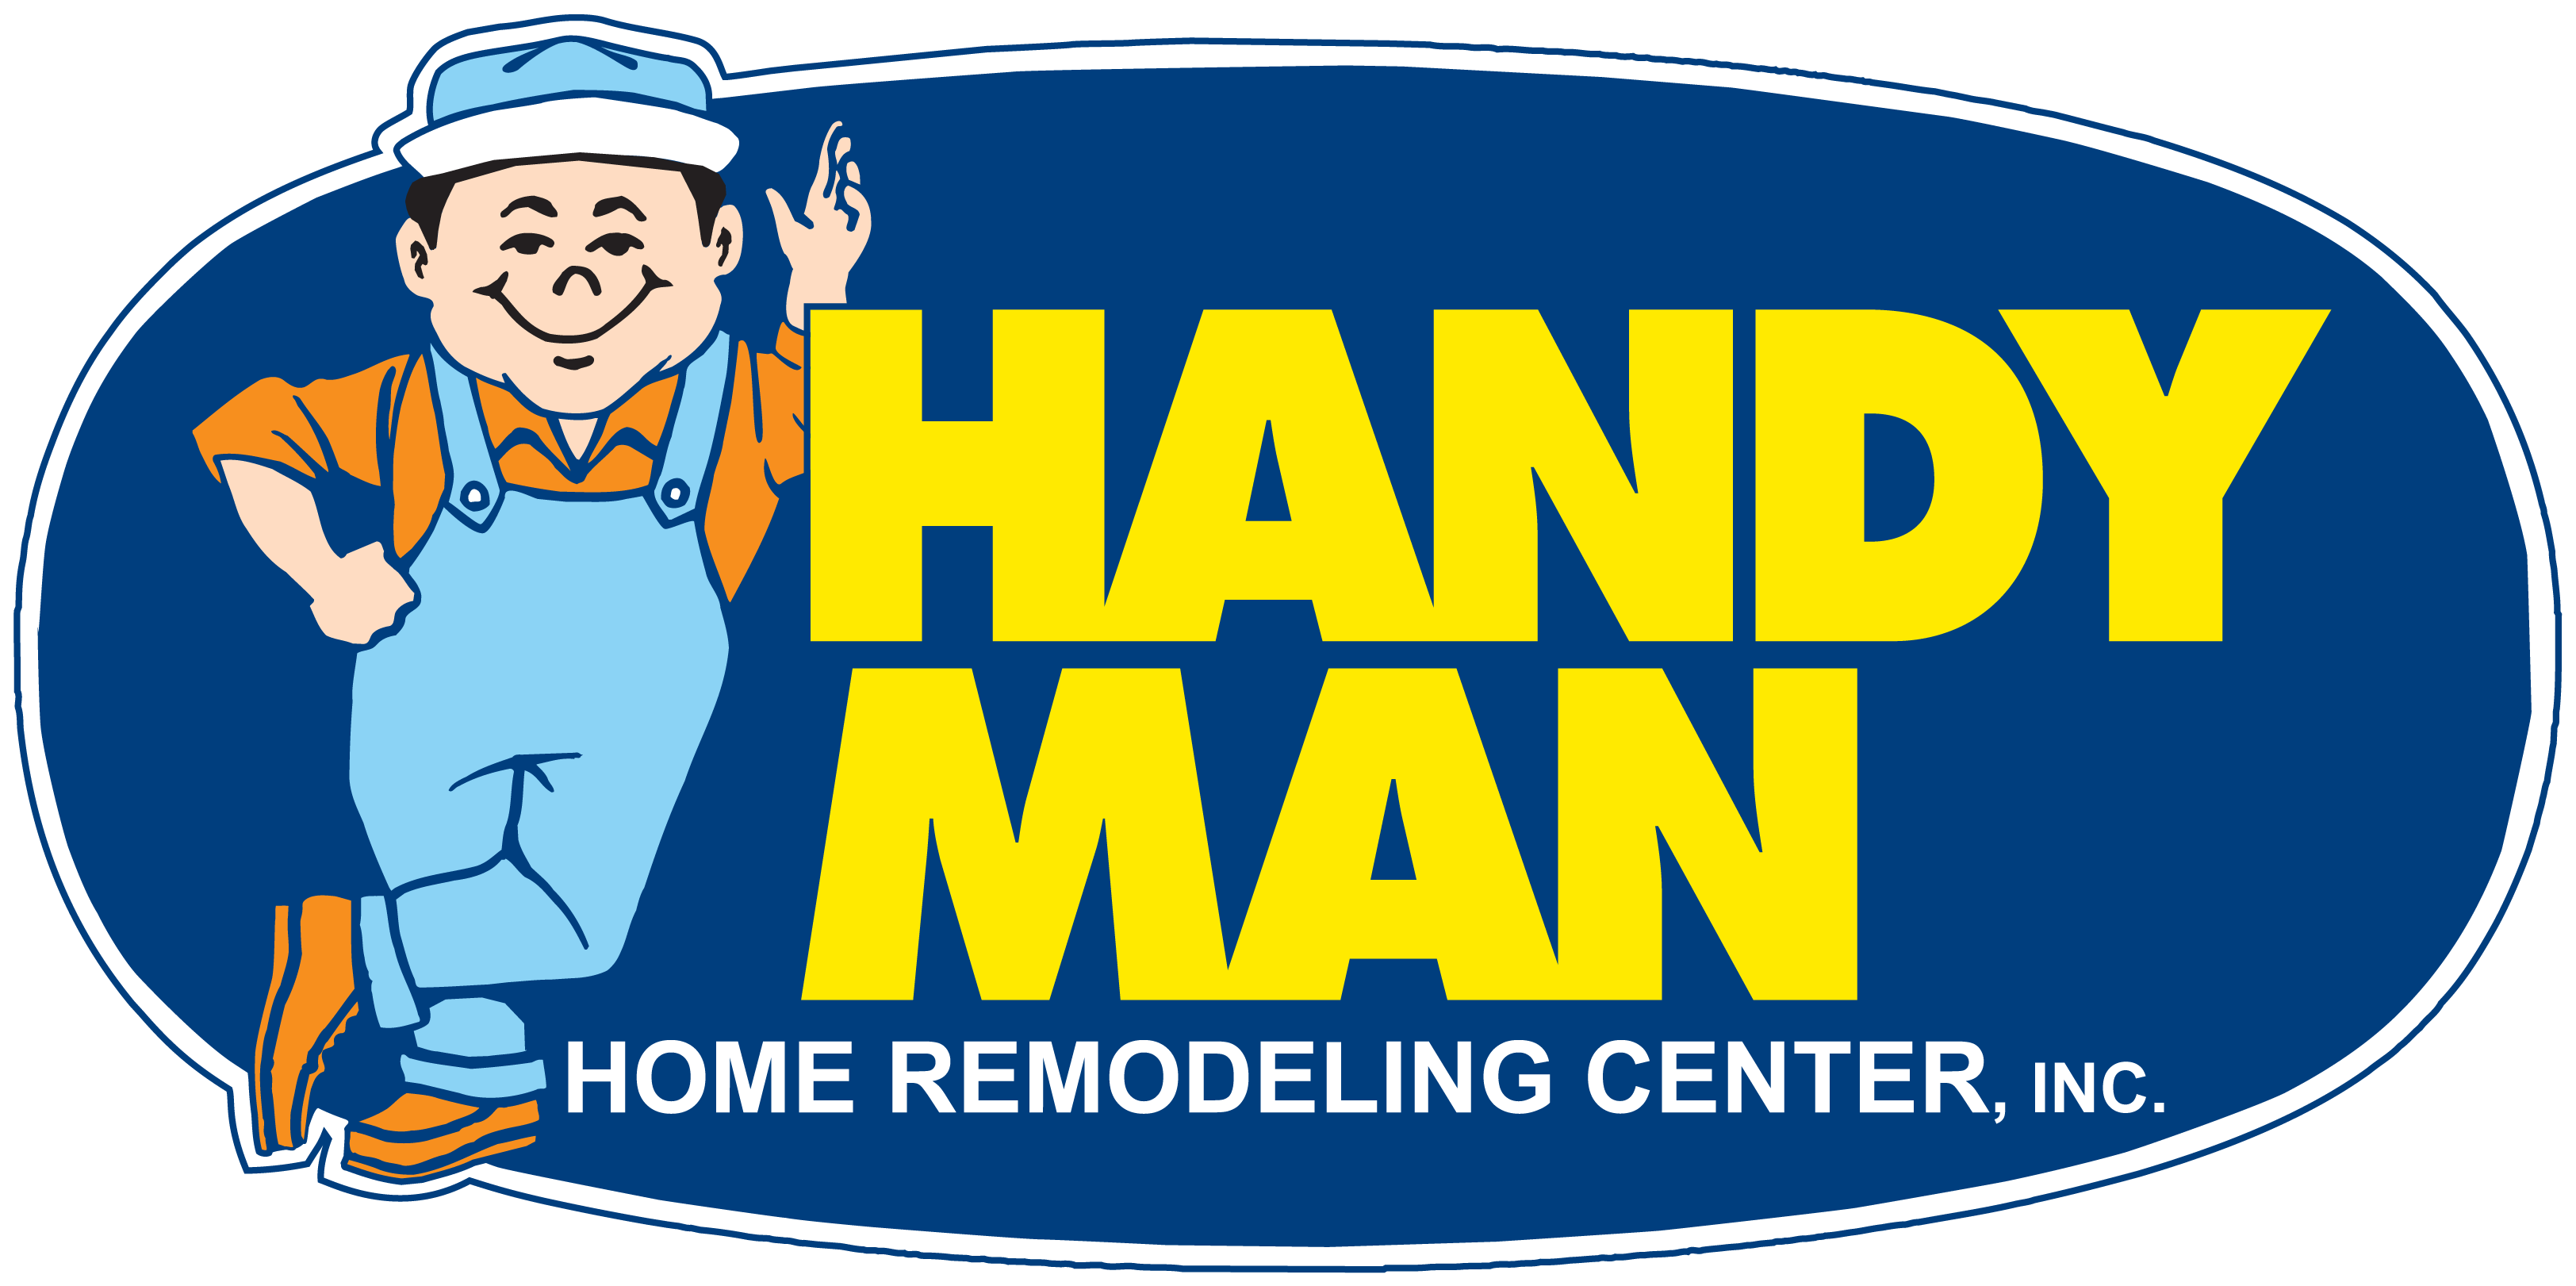 Хэнди Мэн. Логотип Handyman. Plumbing man logo. Хэнди Мэн манипулятор. Handy man